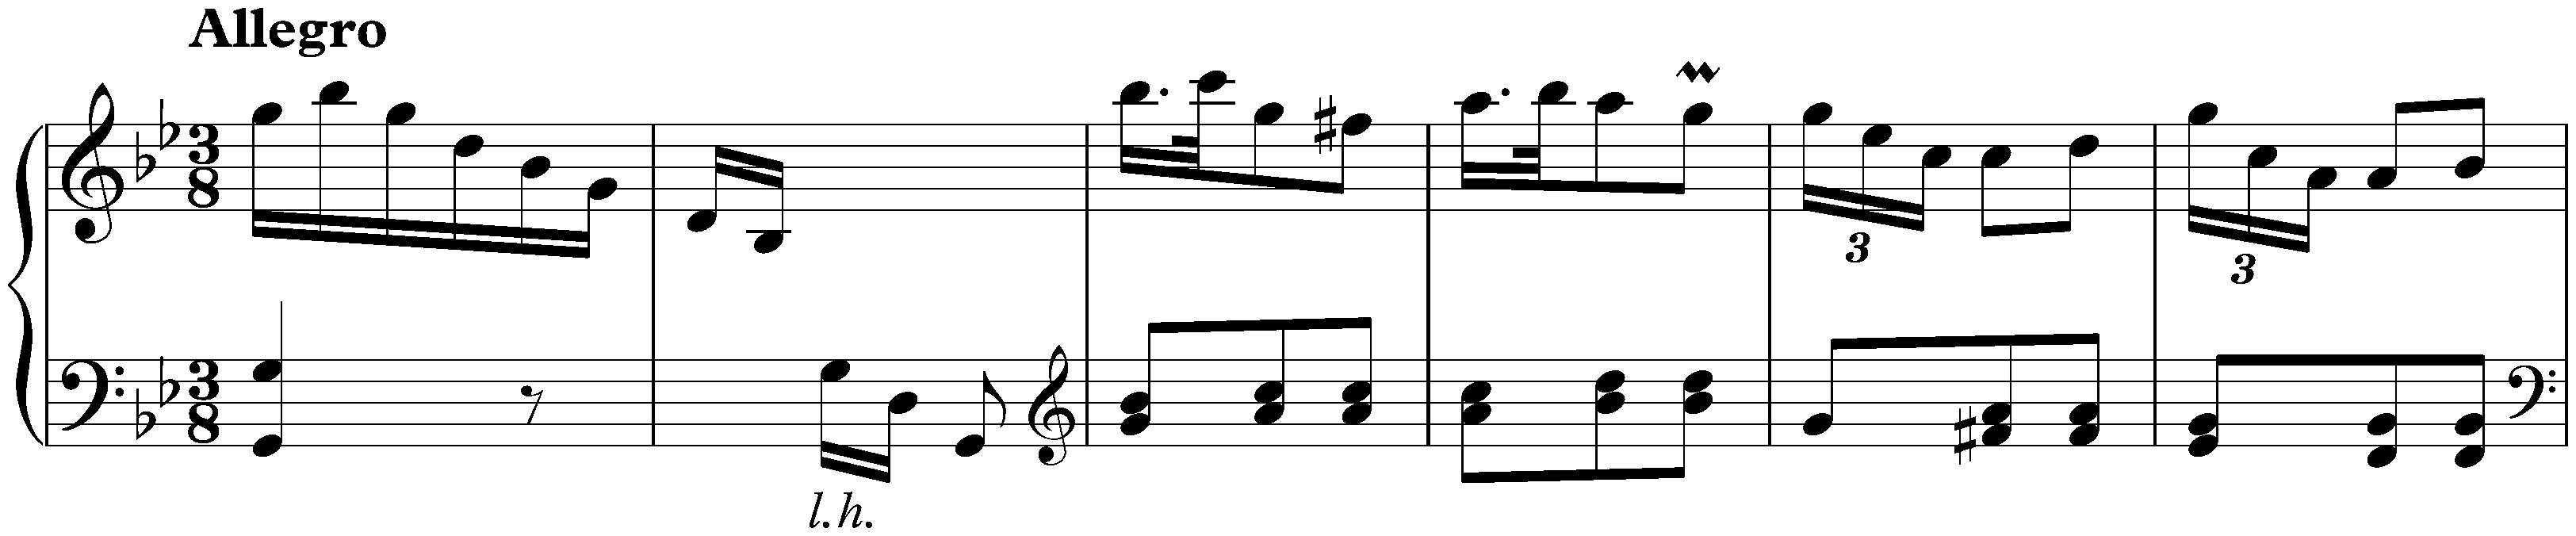 Sonata in G minor, K. 179